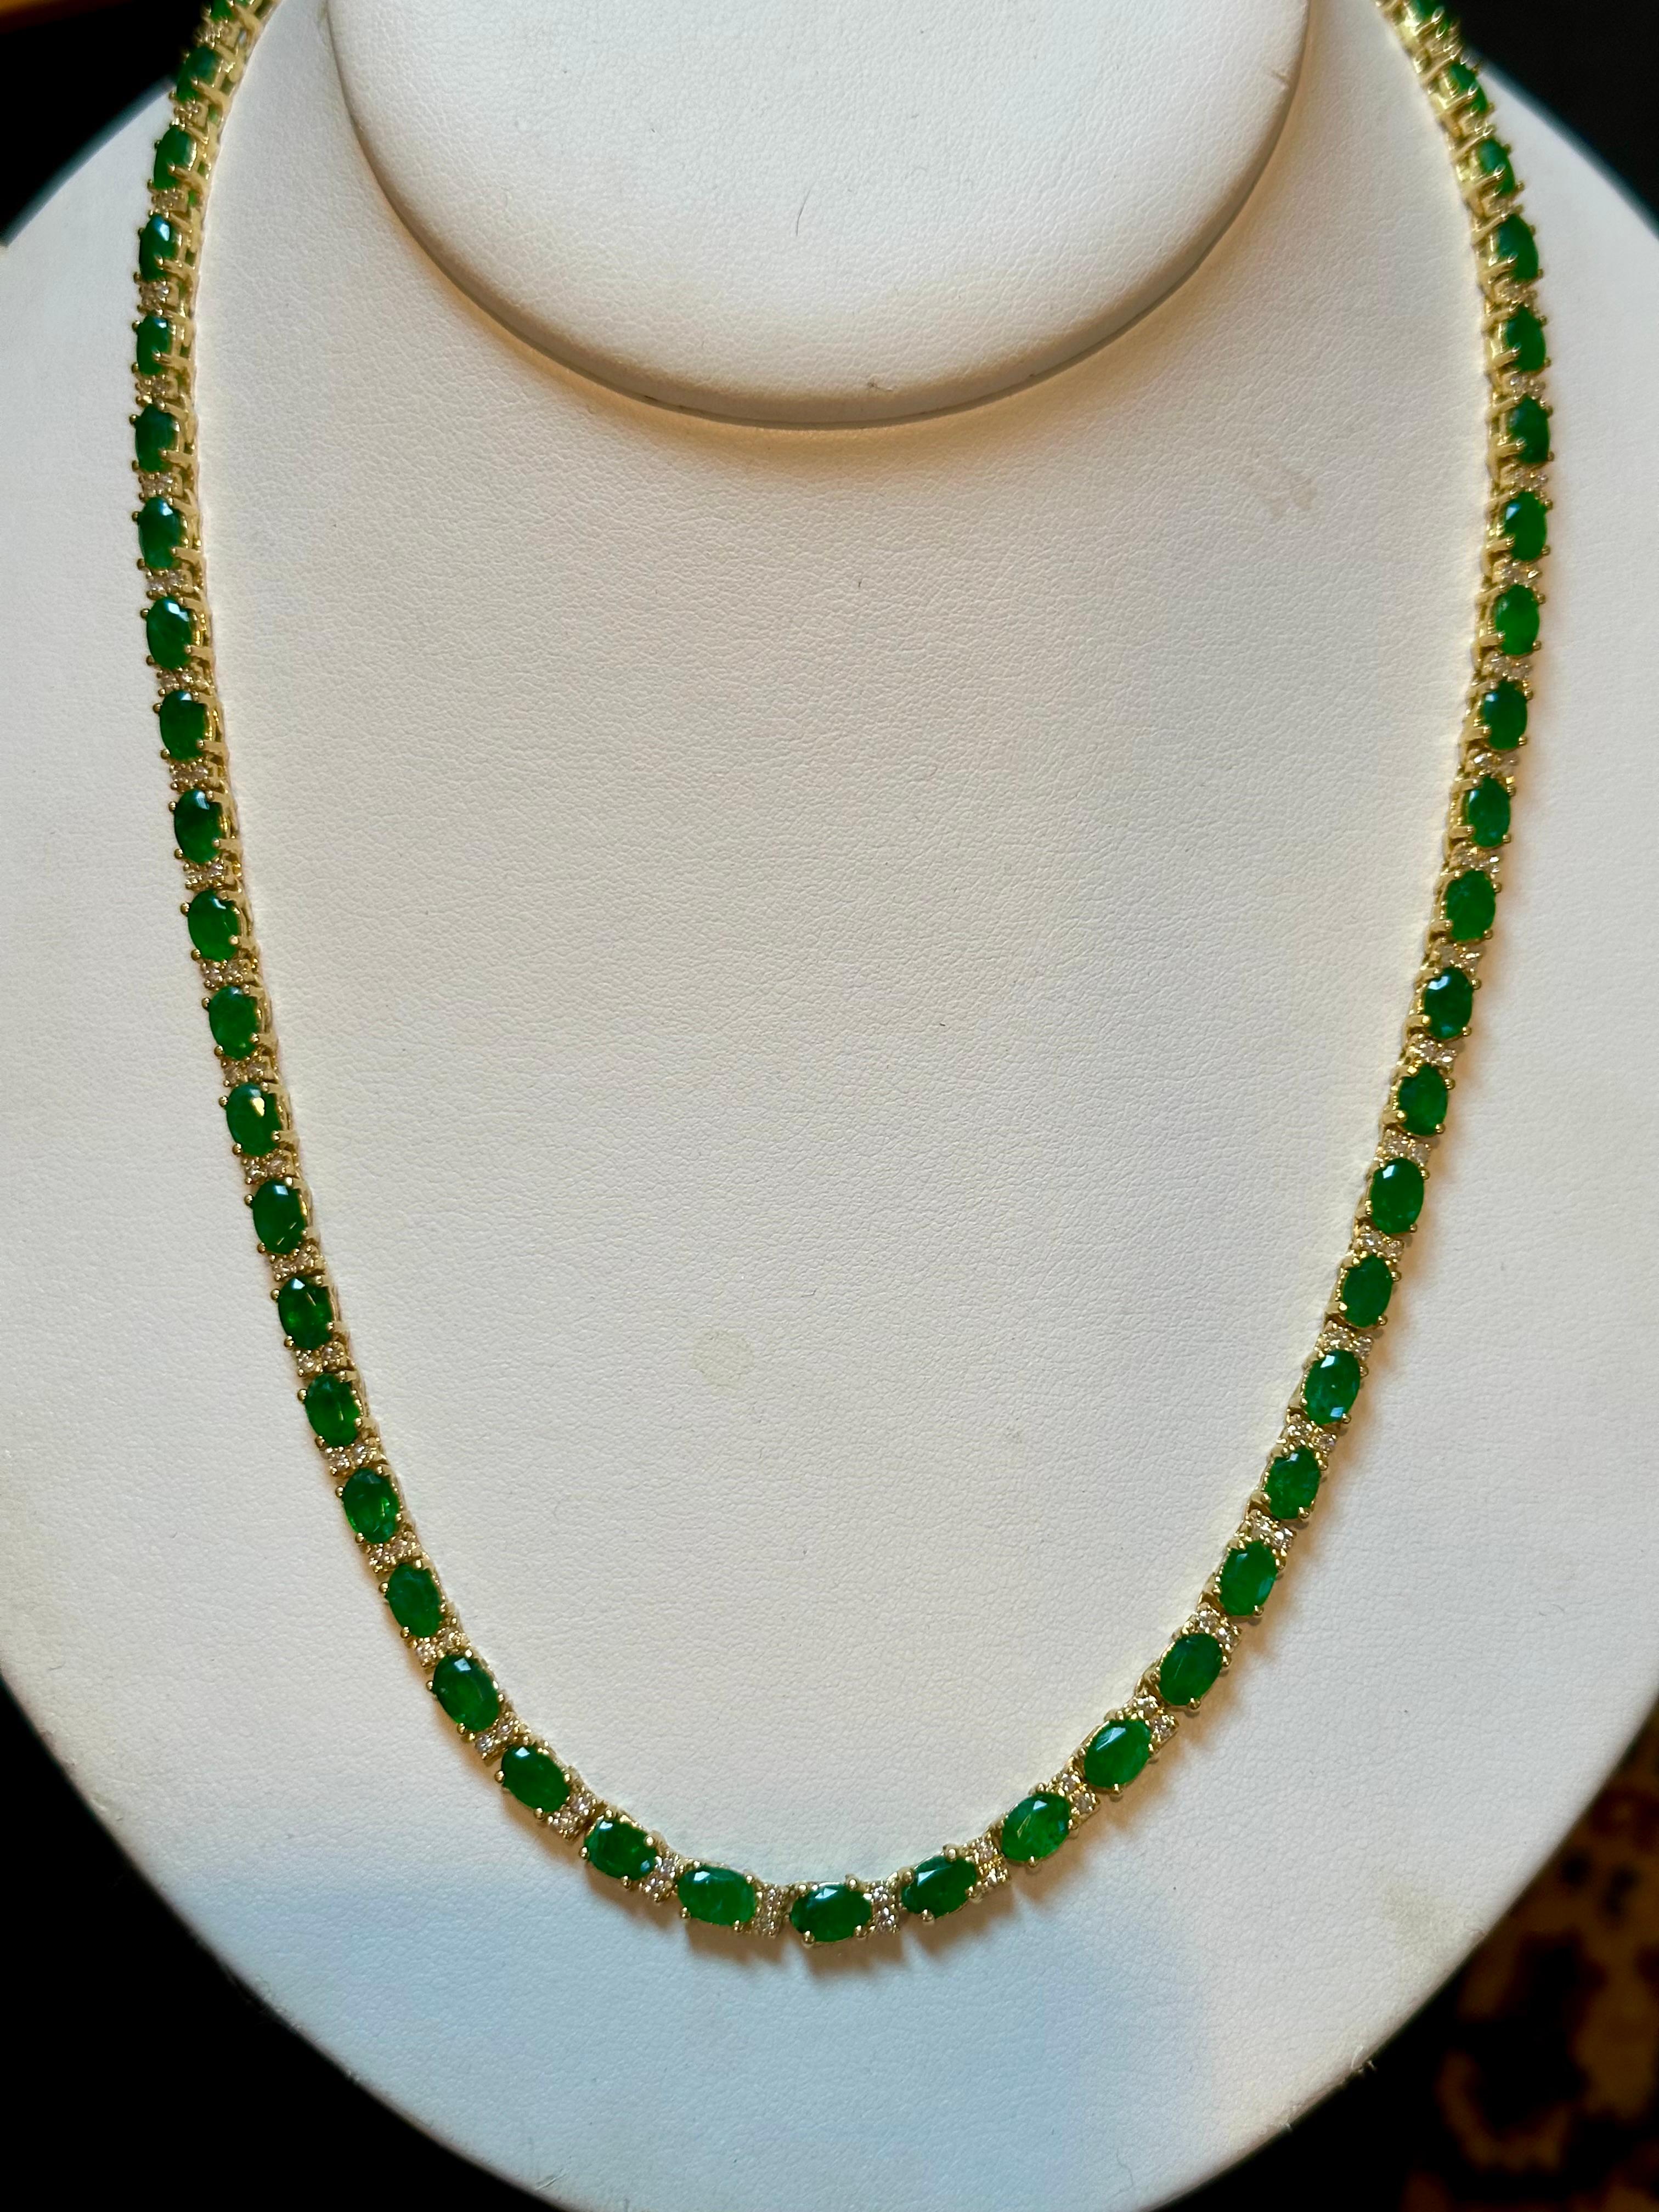 30 Carat Oval Brazilian Emerald & 3 Carat Diamond Tennis Necklace 14 Karat Gold For Sale 3